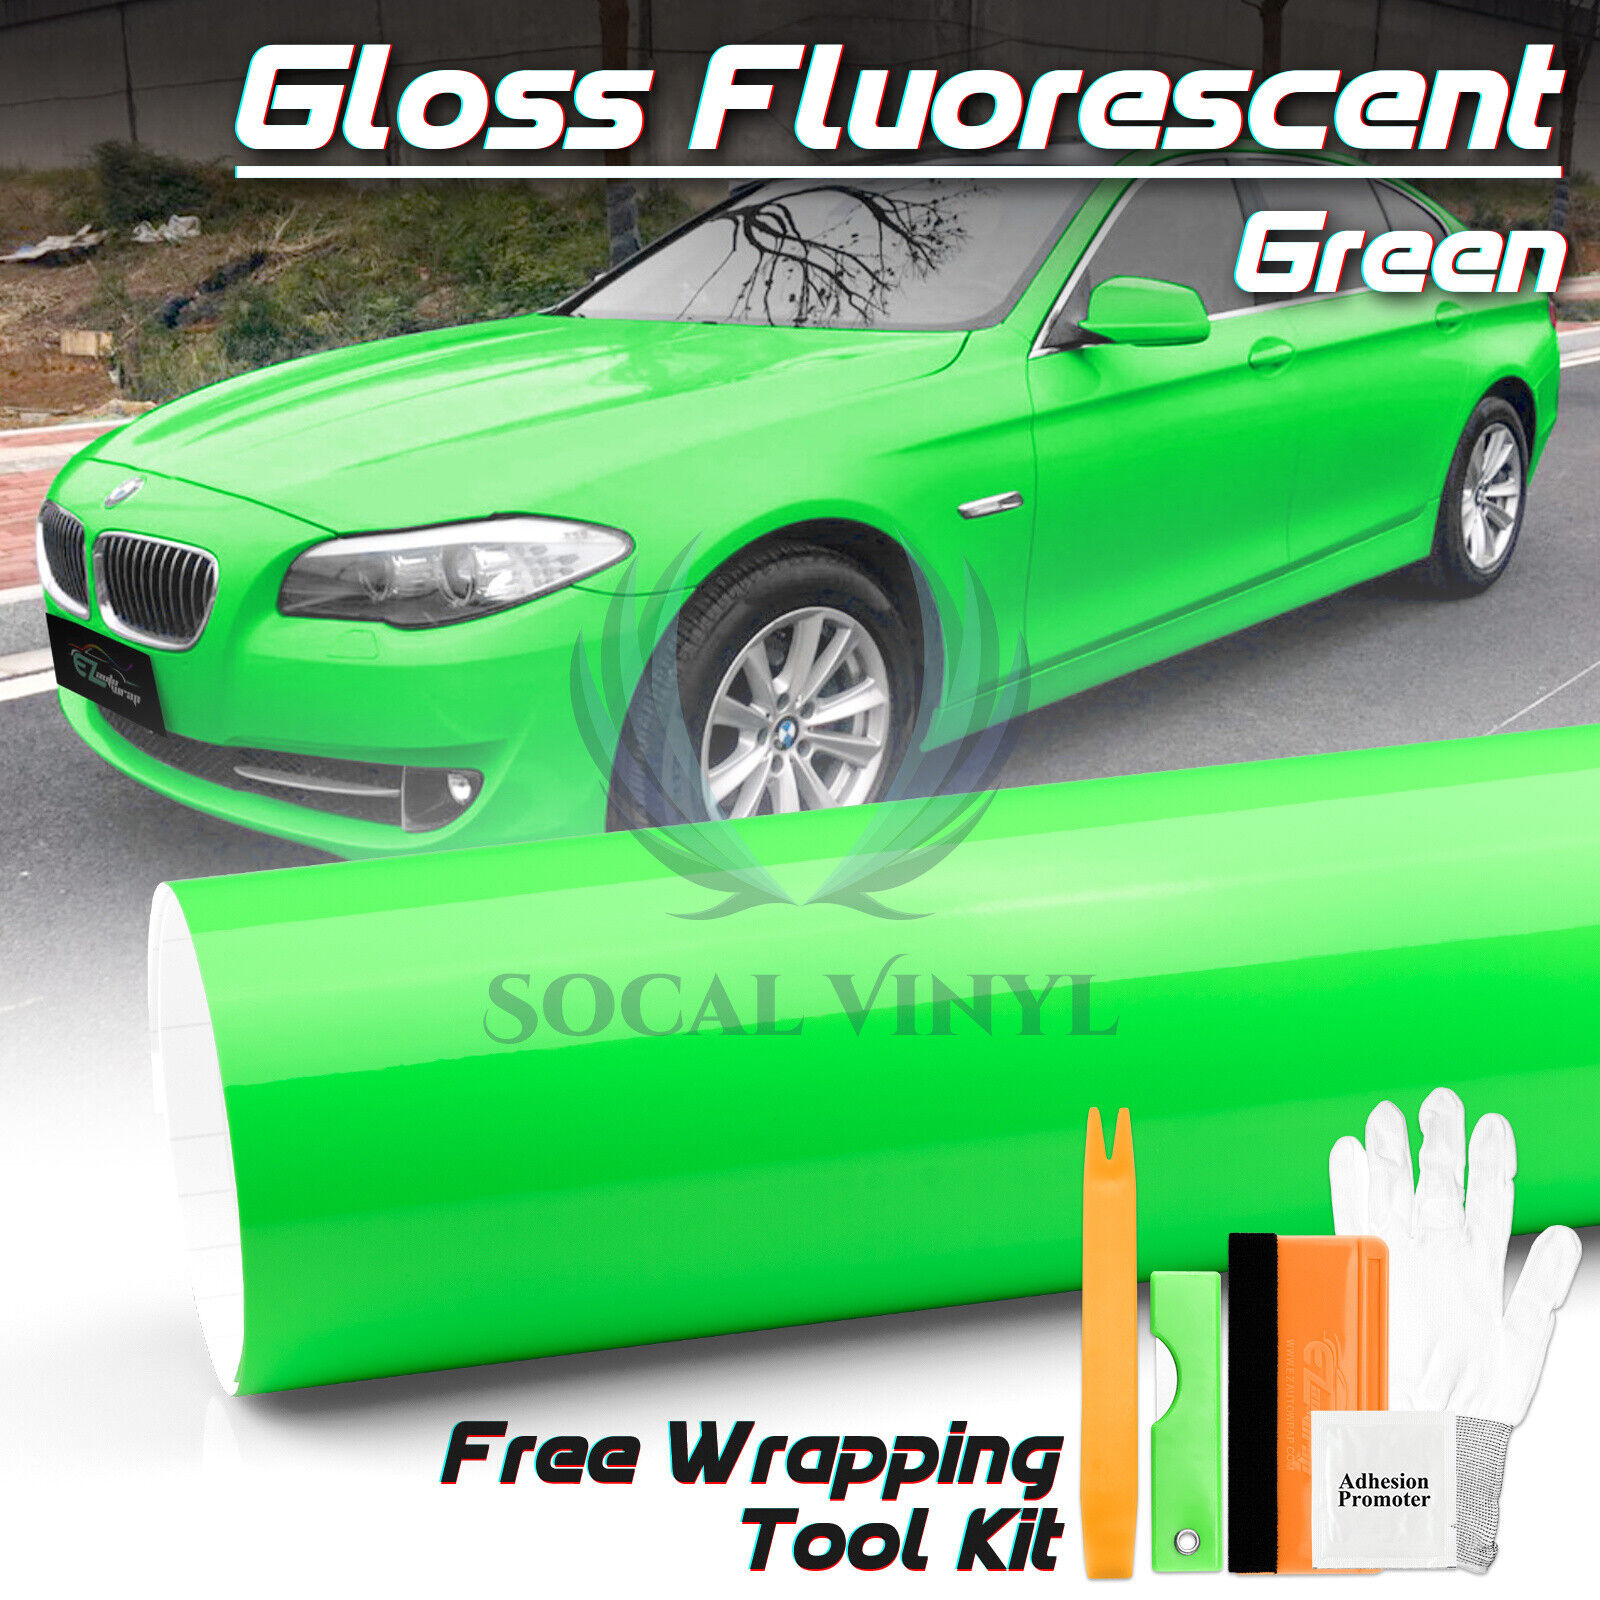 Fluorescent Gloss Neon Green Car Sticker Decal Vinyl Wrap Air Release Sheet Film